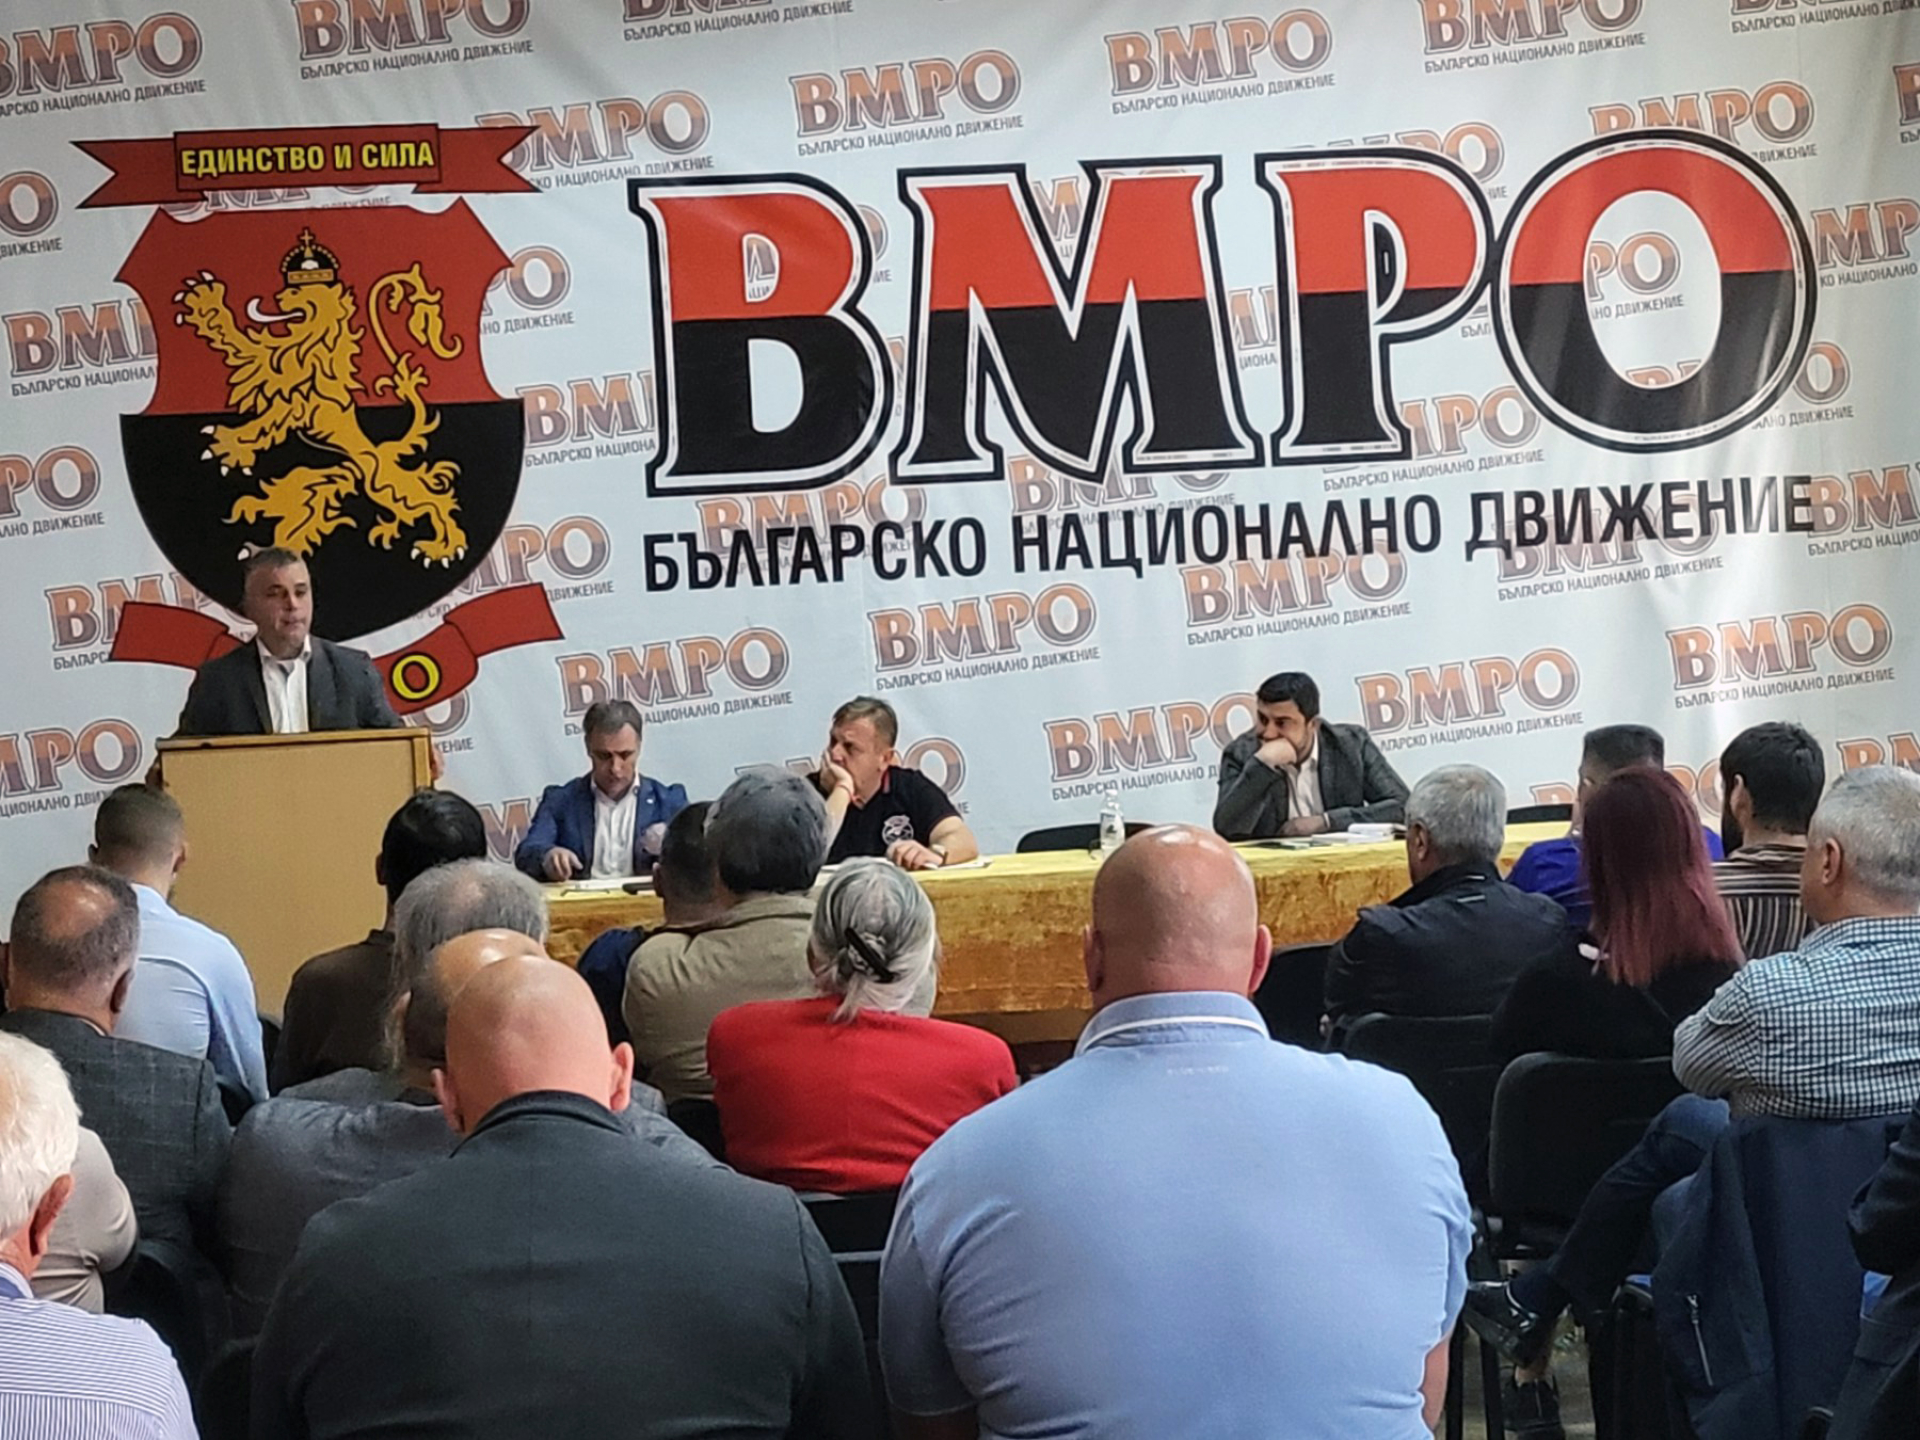 ПП „ВМРО – Българско национално движение“ ще участва в изборите за ЕП и НС с партийната си регистрация и граждани в листите